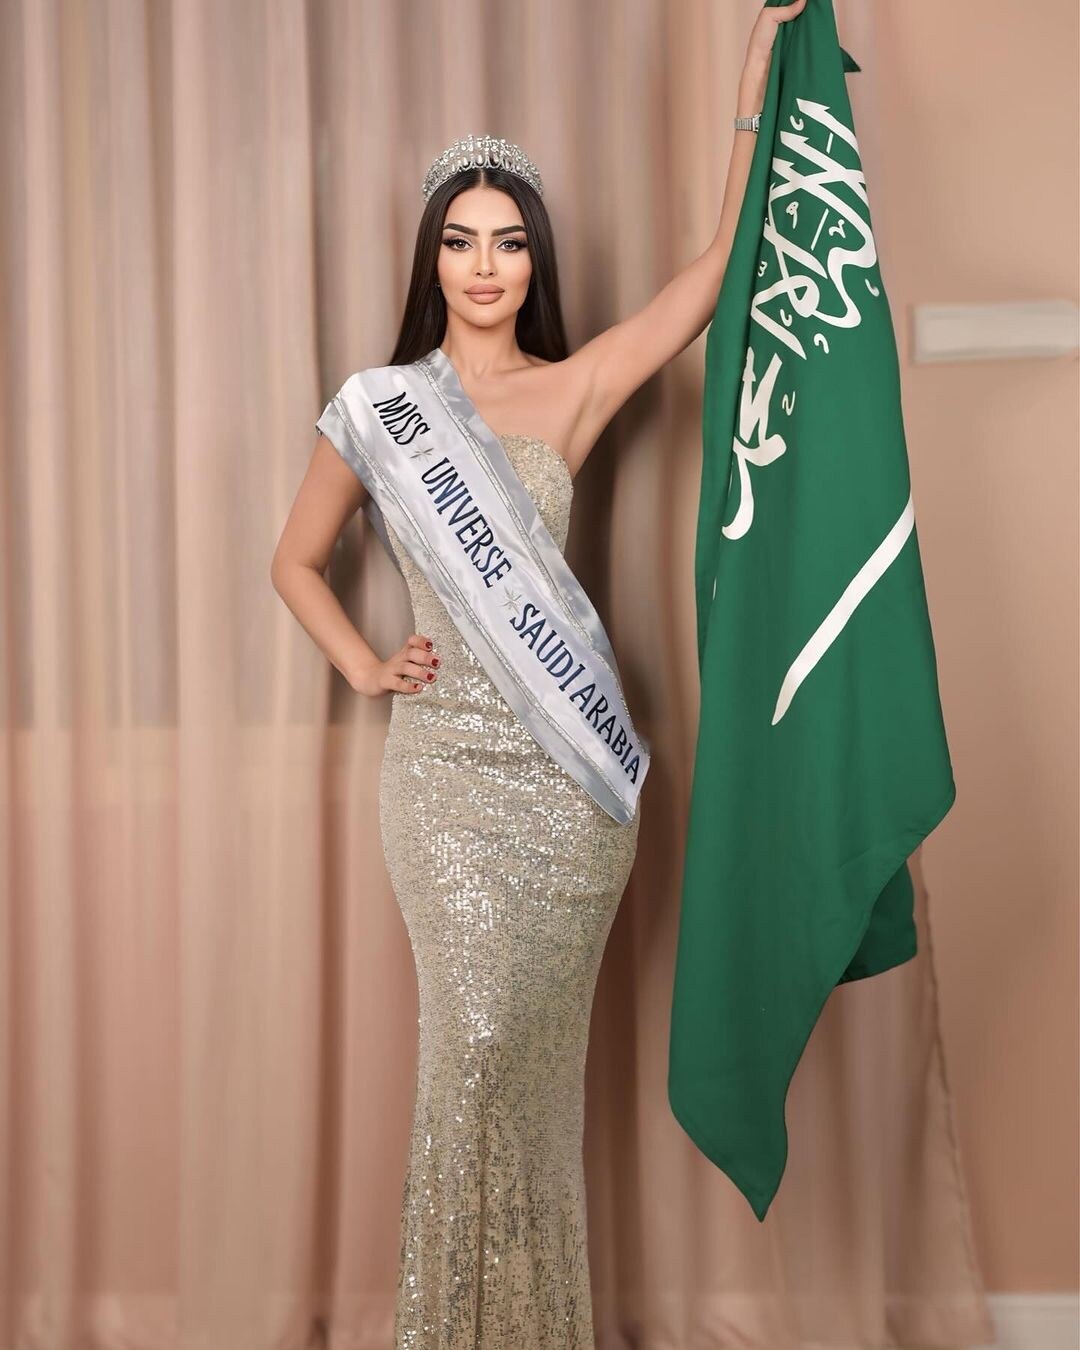 Nhan sắc gây tranh cãi của người đẹp Saudi Arabia đầu tiên thi Hoa hậu Hoàn vũ ảnh 2